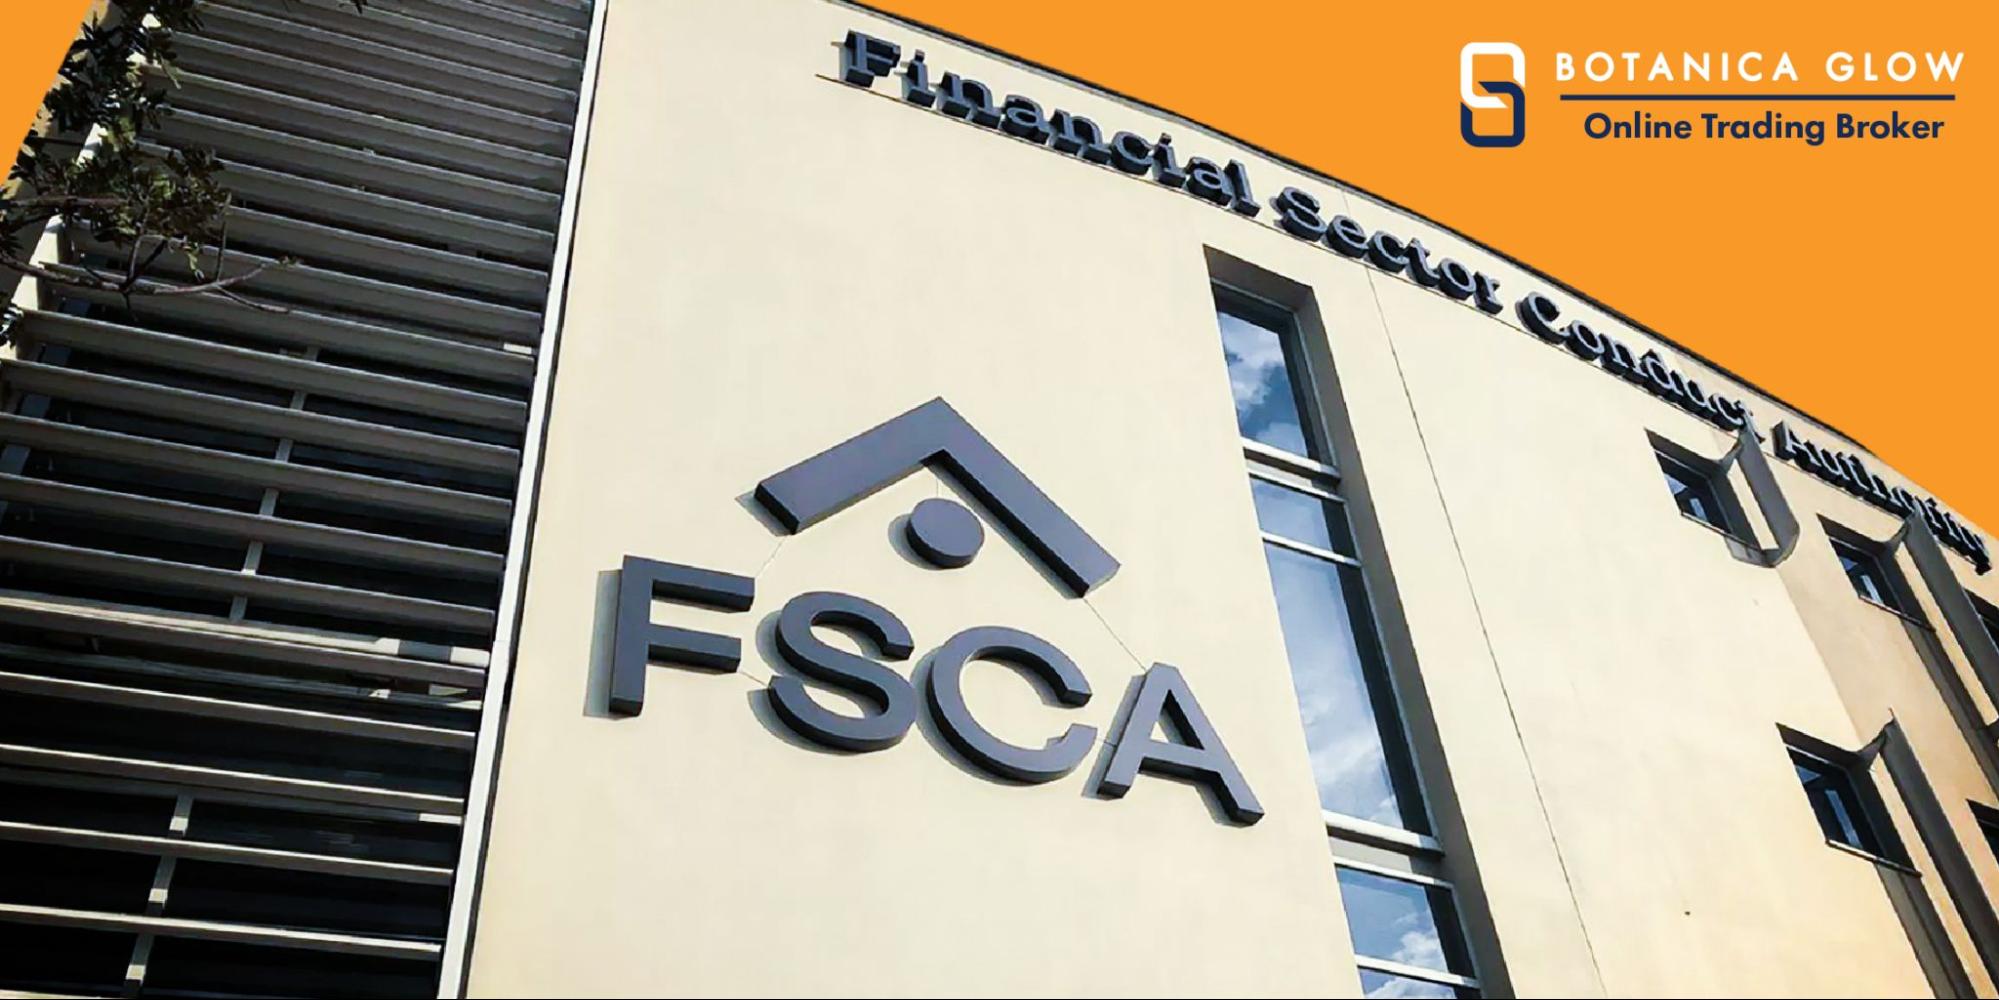 Giấy phép FSCA là gì?